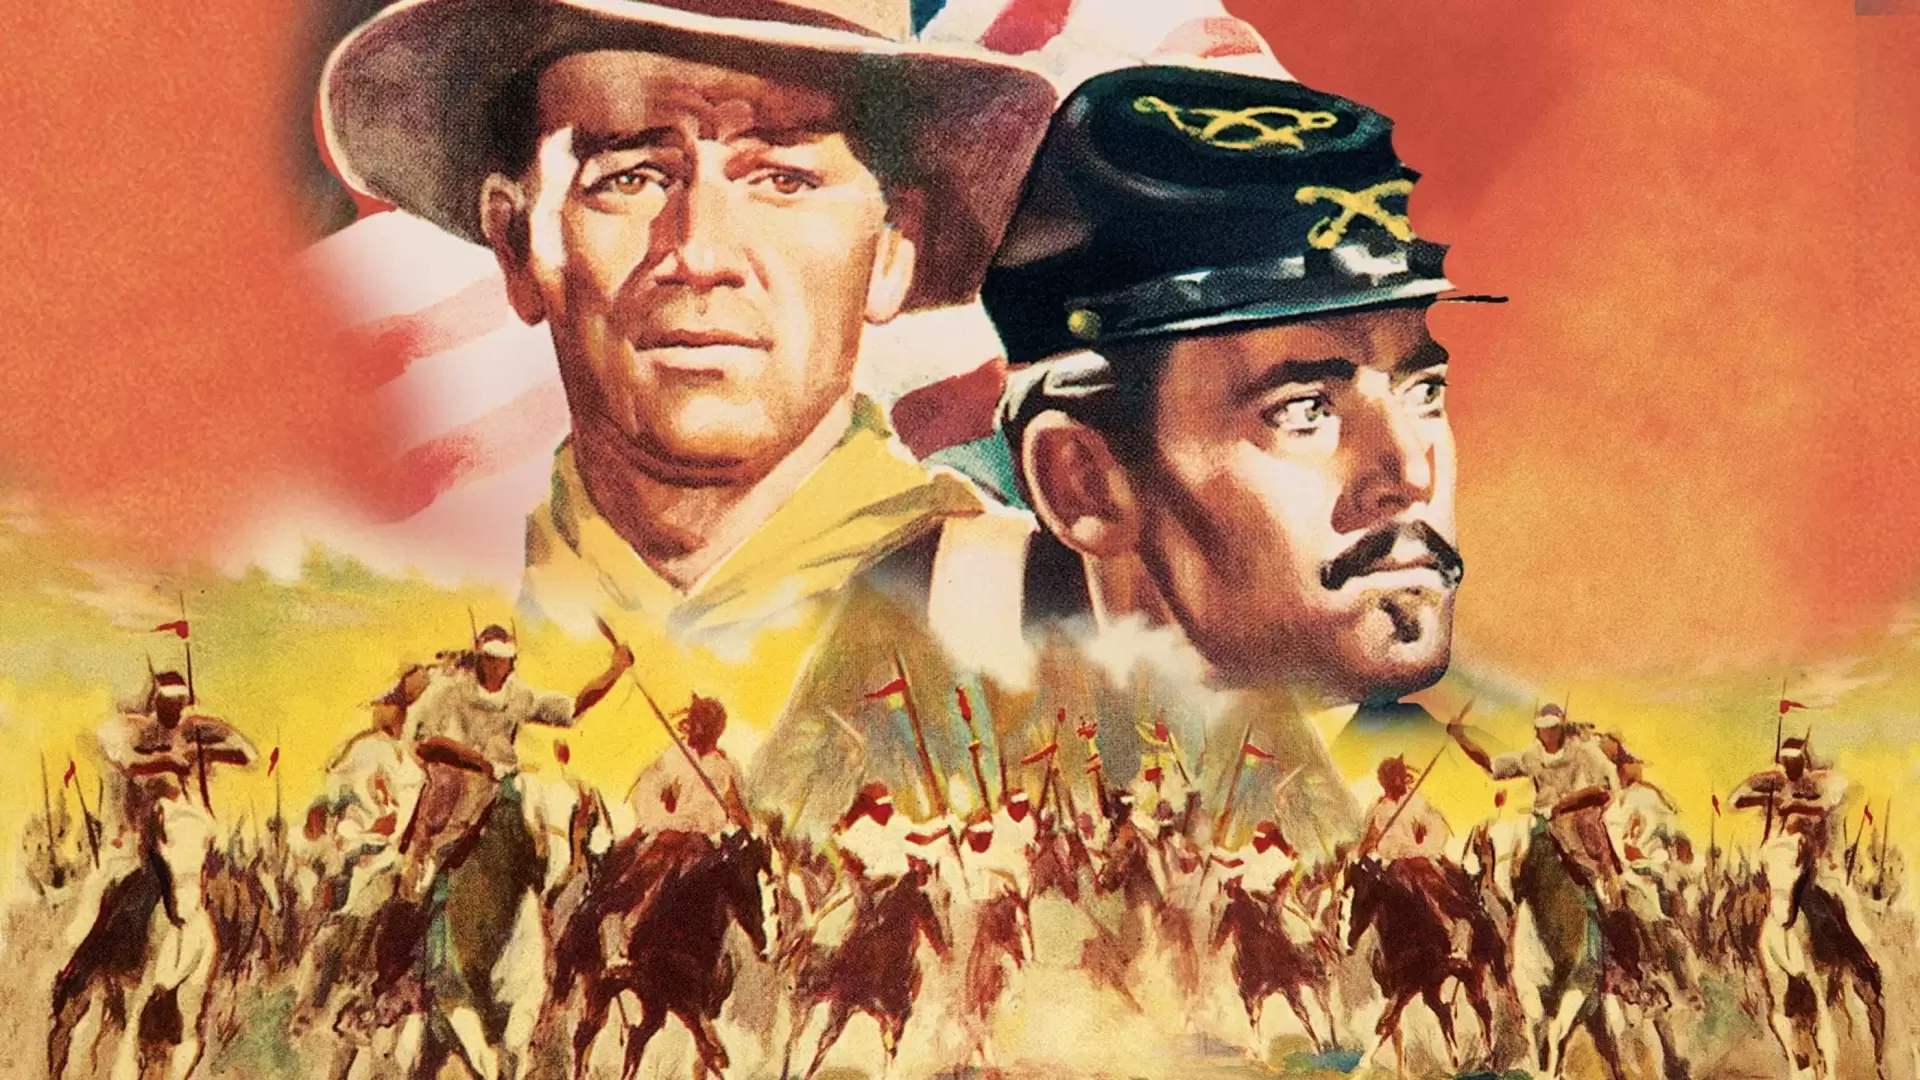 دانلود فیلم Fort Apache 1948 (دژ آپاچی) با زیرنویس فارسی و تماشای آنلاین